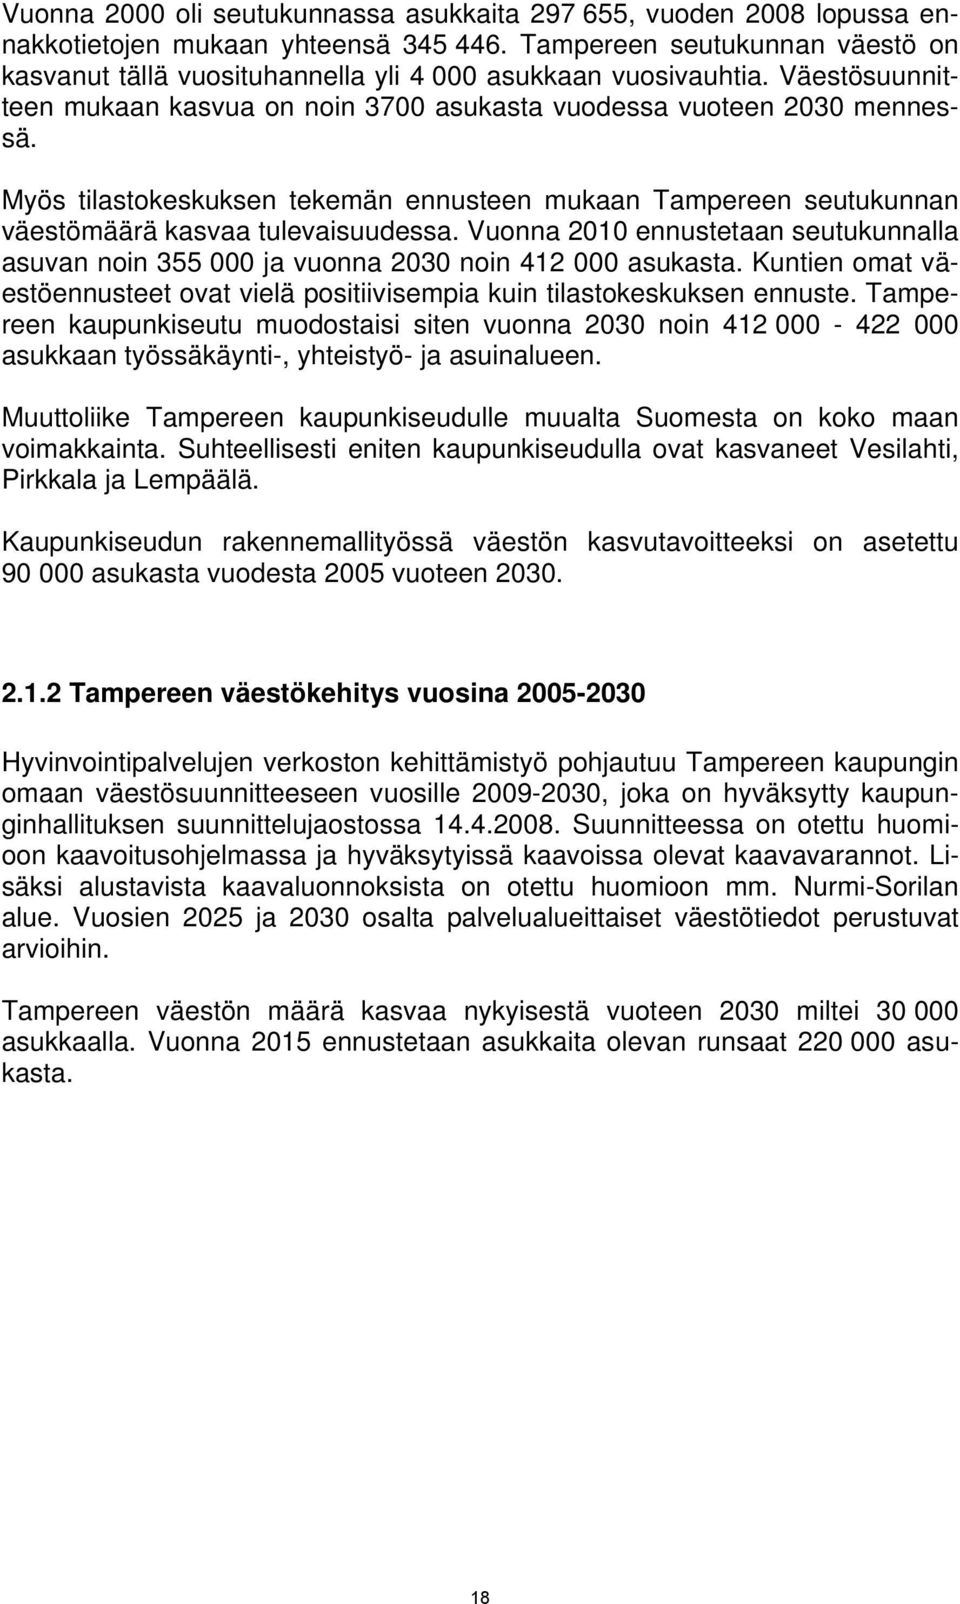 Myös tilastokeskuksen tekemän ennusteen mukaan Tampereen seutukunnan väestömäärä kasvaa tulevaisuudessa. Vuonna 2010 ennustetaan seutukunnalla asuvan noin 355 000 ja vuonna 2030 noin 412 000 asukasta.